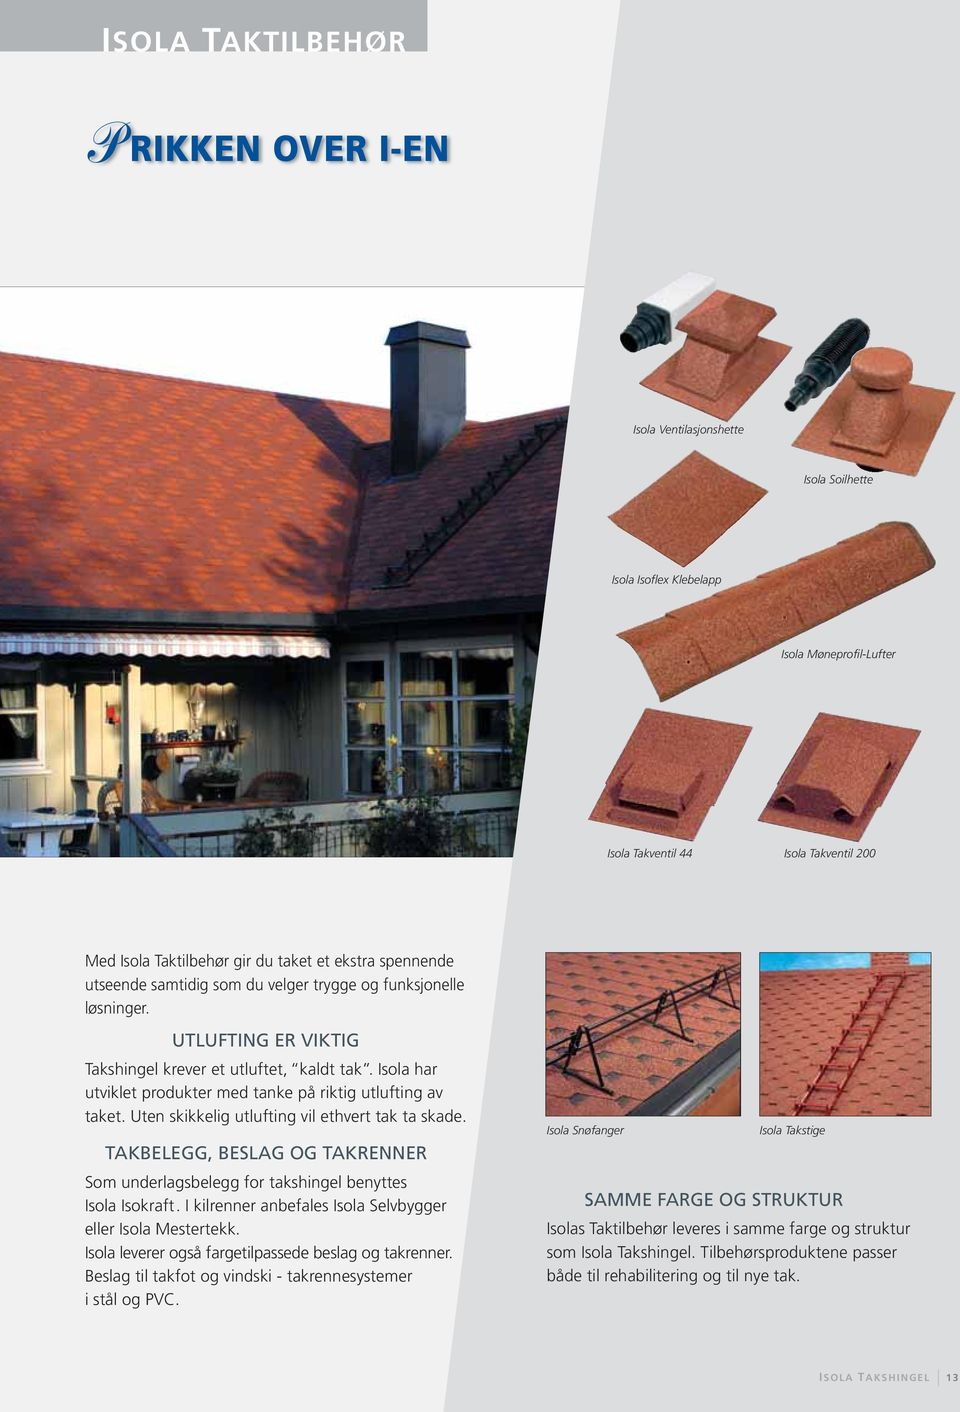 Isola har utviklet produkter med tanke på riktig utlufting av taket. Uten skikkelig utlufting vil ethvert tak ta skade.